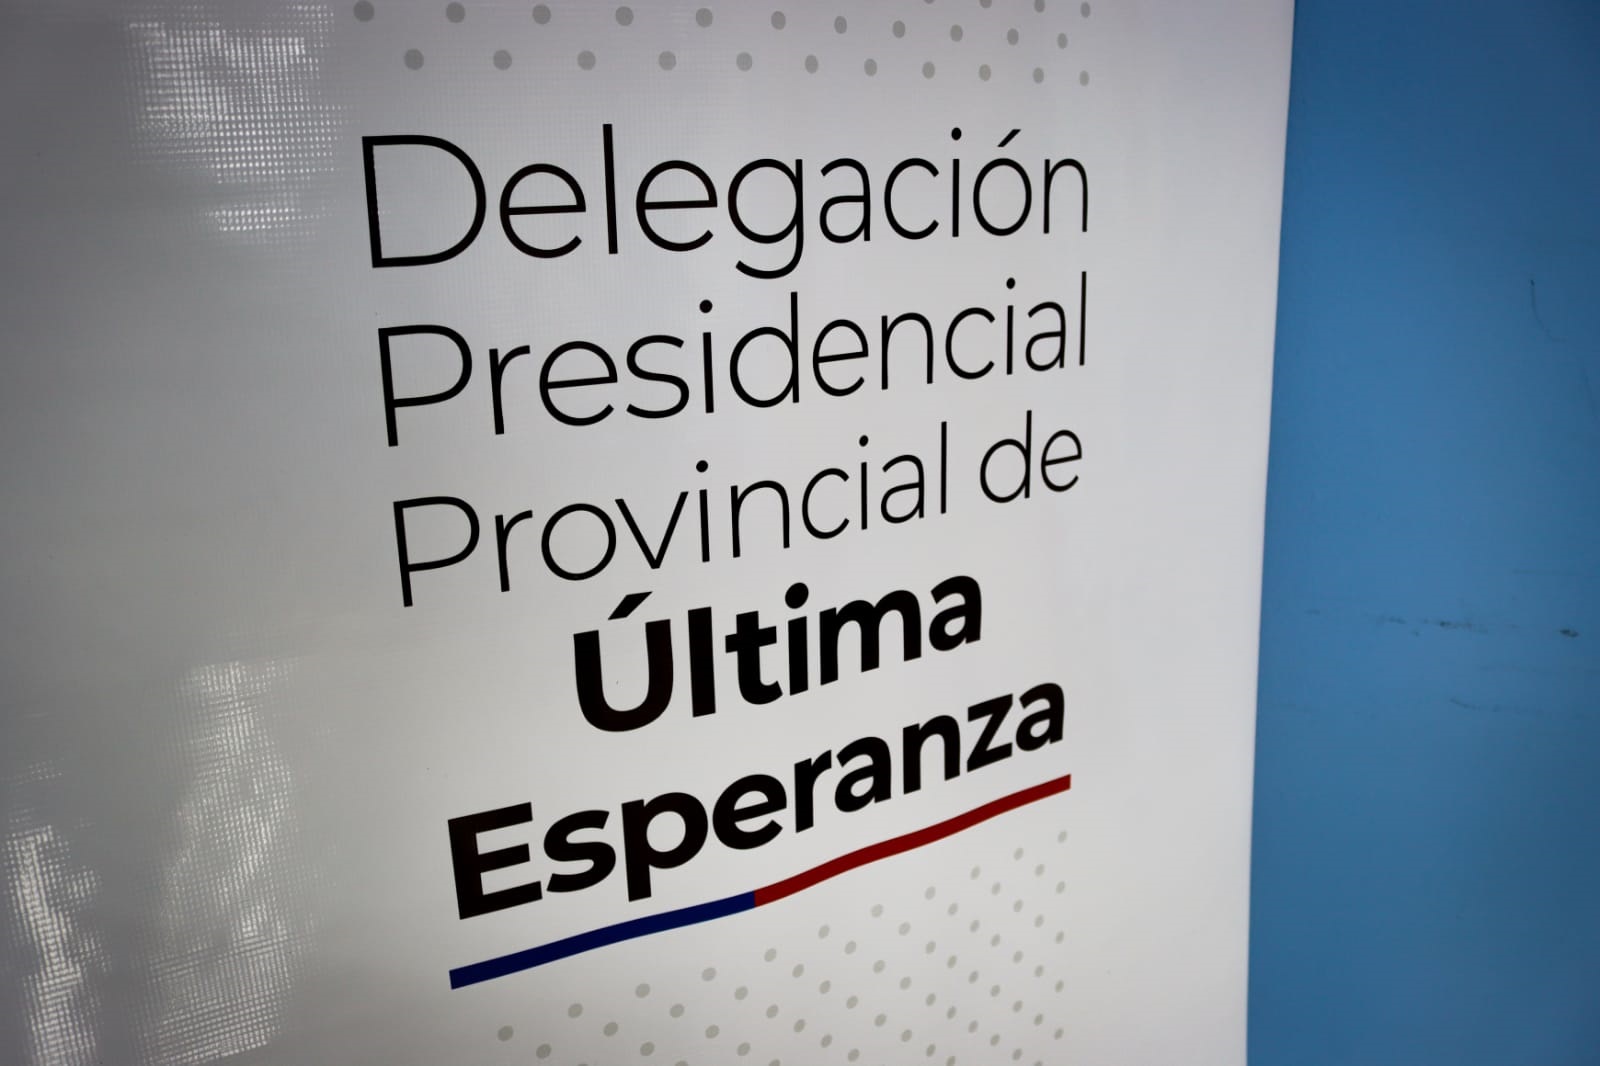 En la Delegación Presidencial de Ultima Esperanza se abrió oficina de consulta sobre reapertura del paso fronterizo Dorotea